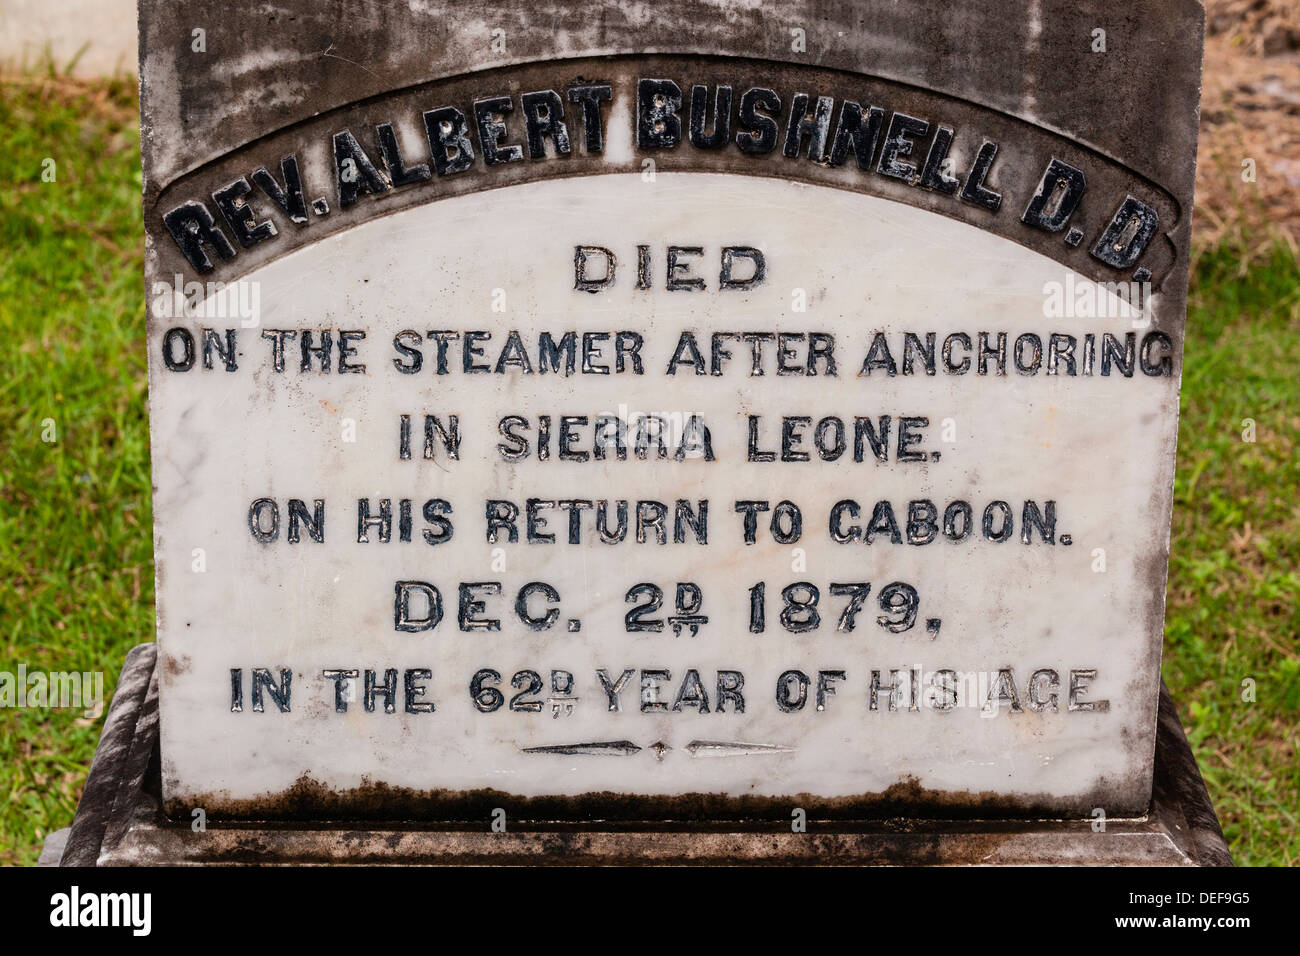 Afrika, Gabun, Libreville. Grabstein für Pfarrer Albert Bushnell, ein Amerikaner, der auf einem Dampfer Schiff in Sierra Leone starb. Stockfoto